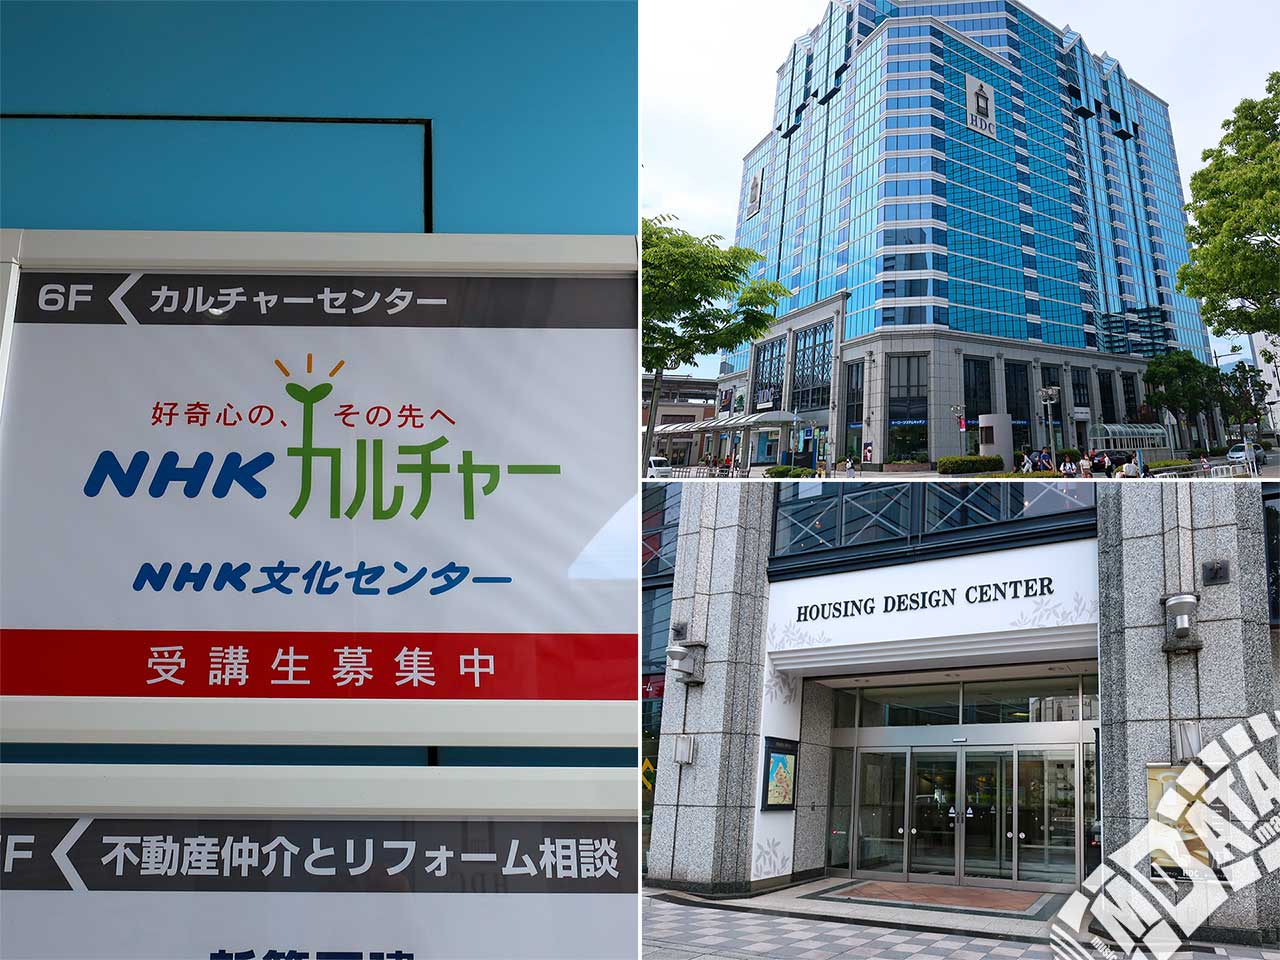 NHK文化センター神戸教室の写真 撮影日:2019/6/3 Photo taken on 2019/06/03